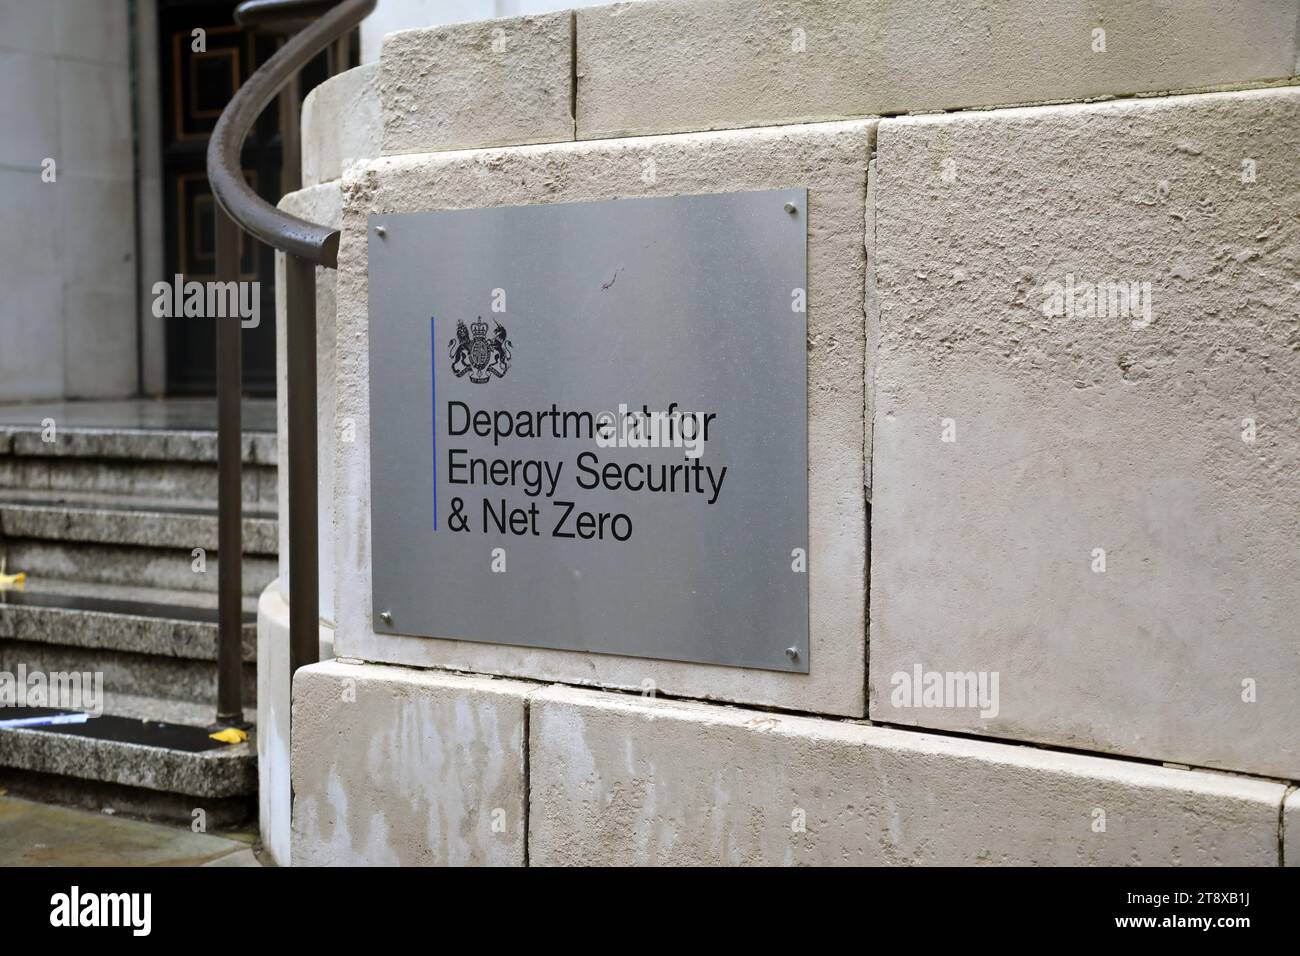 Londres, Reino Unido – 21 de noviembre de 2023: Entrada al Departamento de Seguridad Energética del Reino Unido y Net Zero, en el centro de Londres Foto de stock